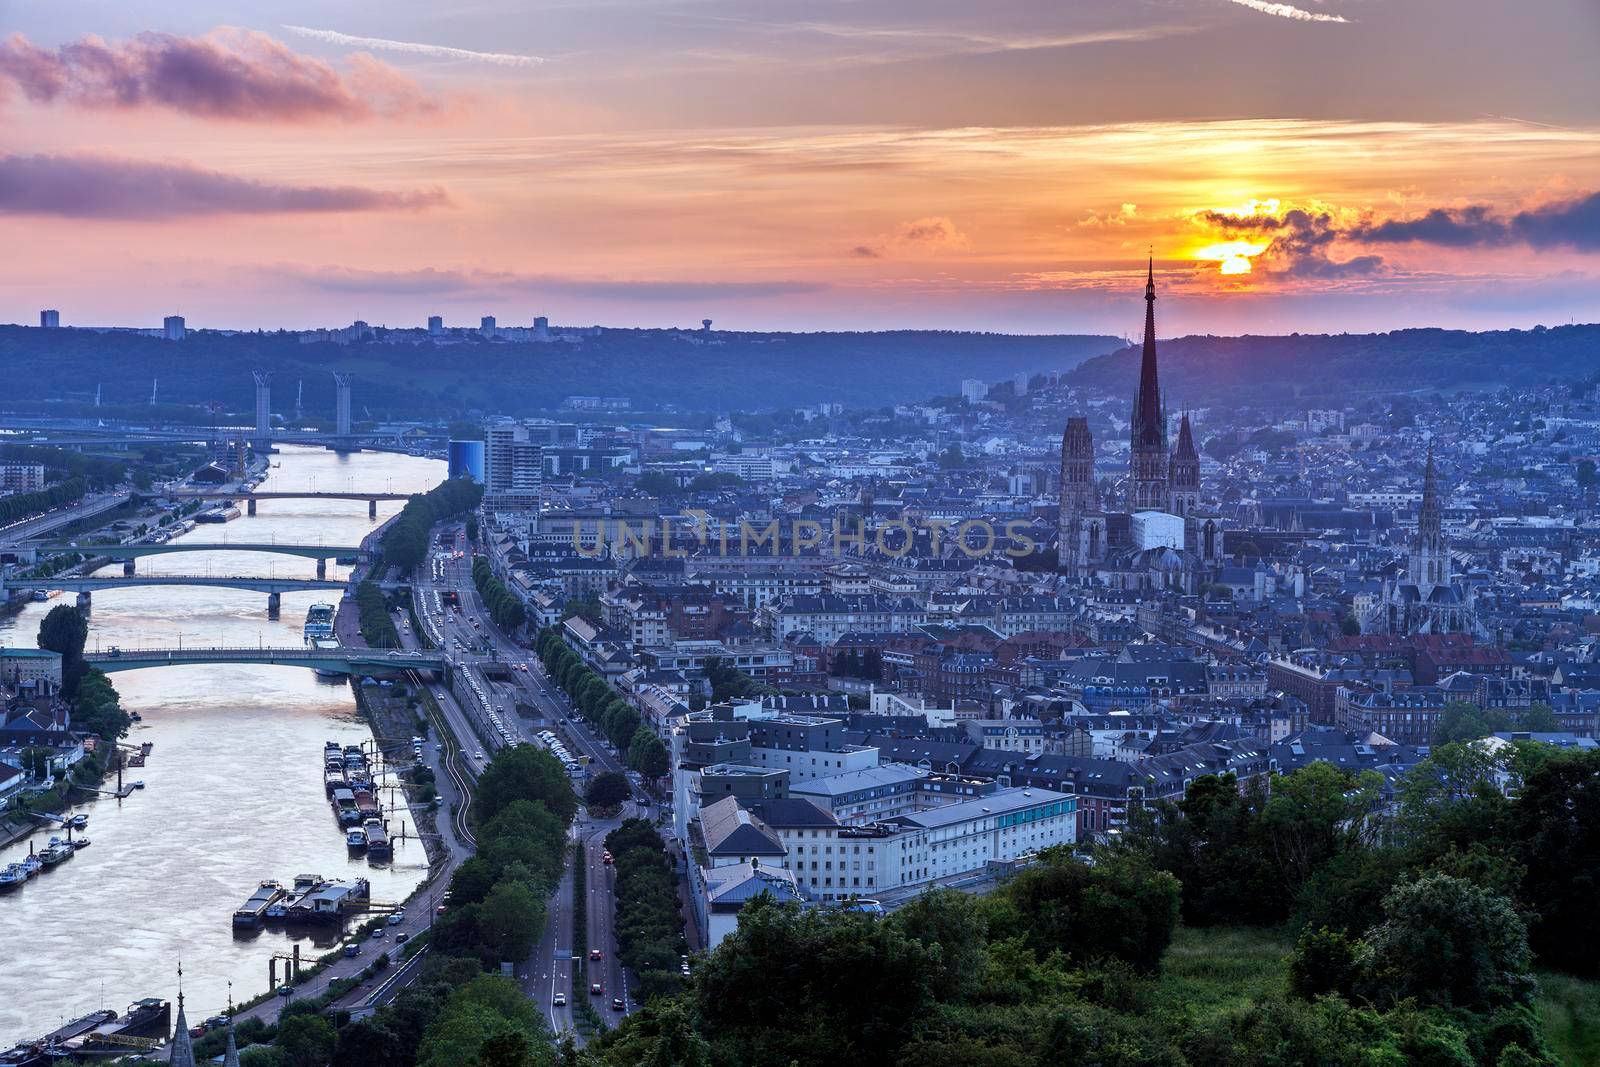 Sunset in Rouen by benkrut